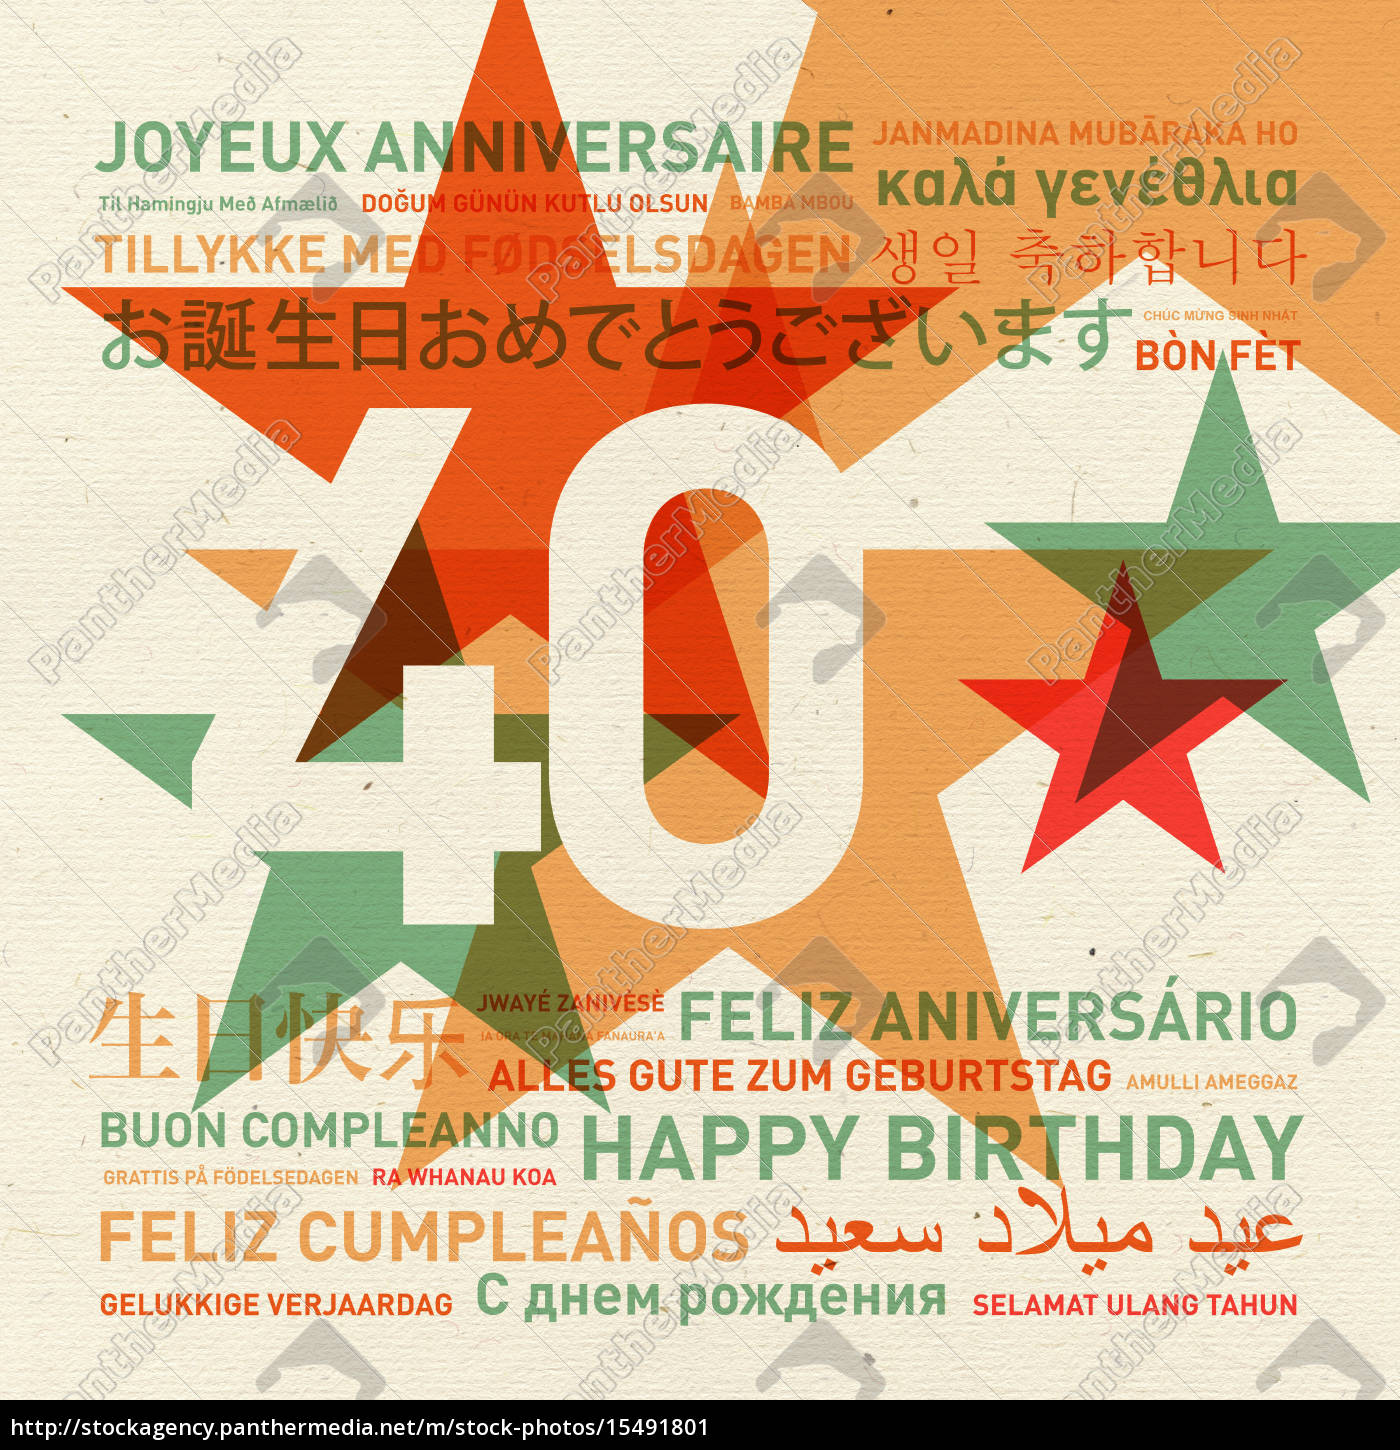 Klappkarte Basteln Of Karte Zum 40 Geburtstag Birthday Card For A